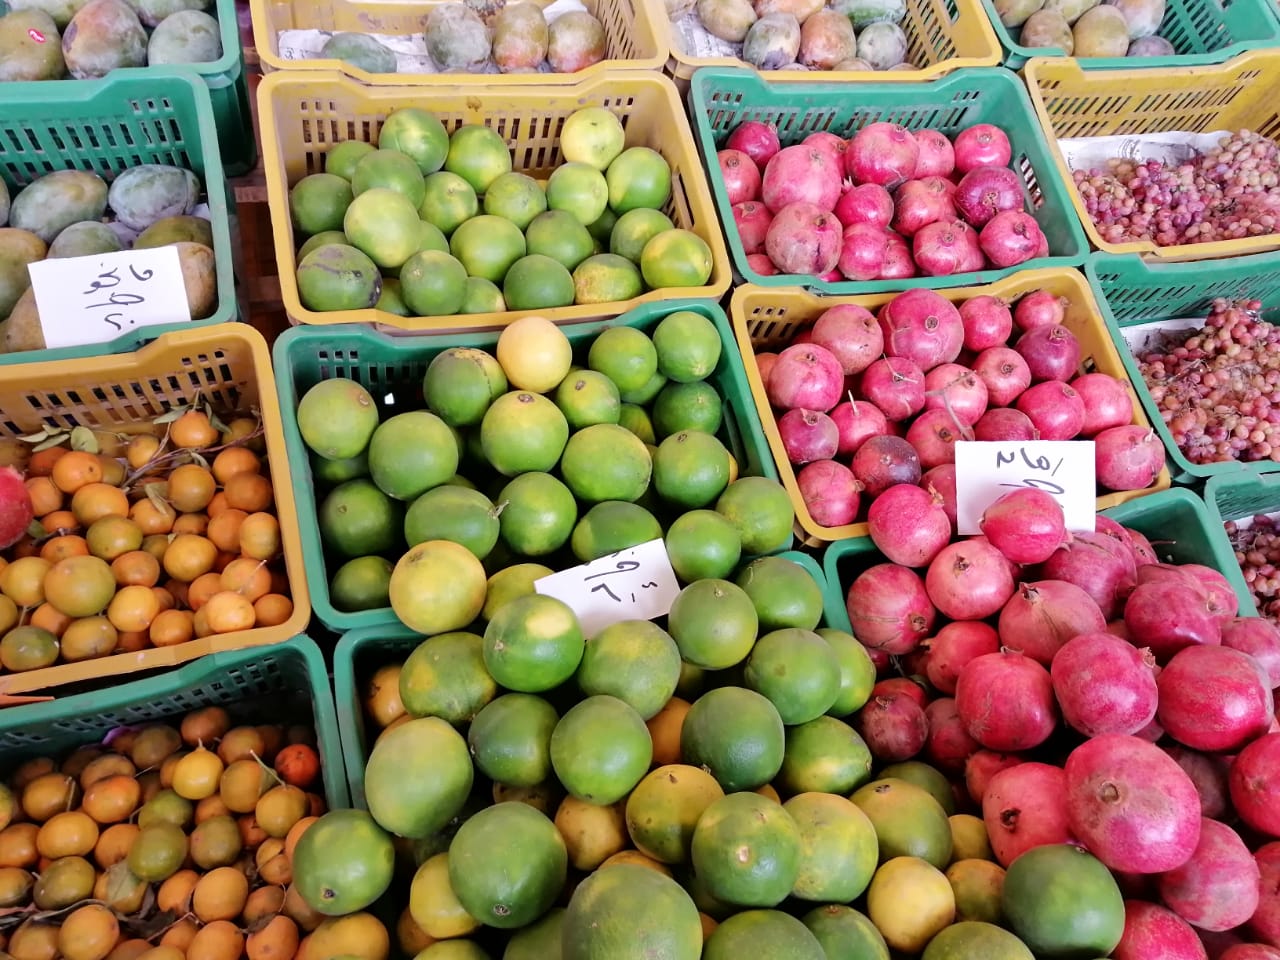 الفاكهة والخضر بسوق الغربية (2)